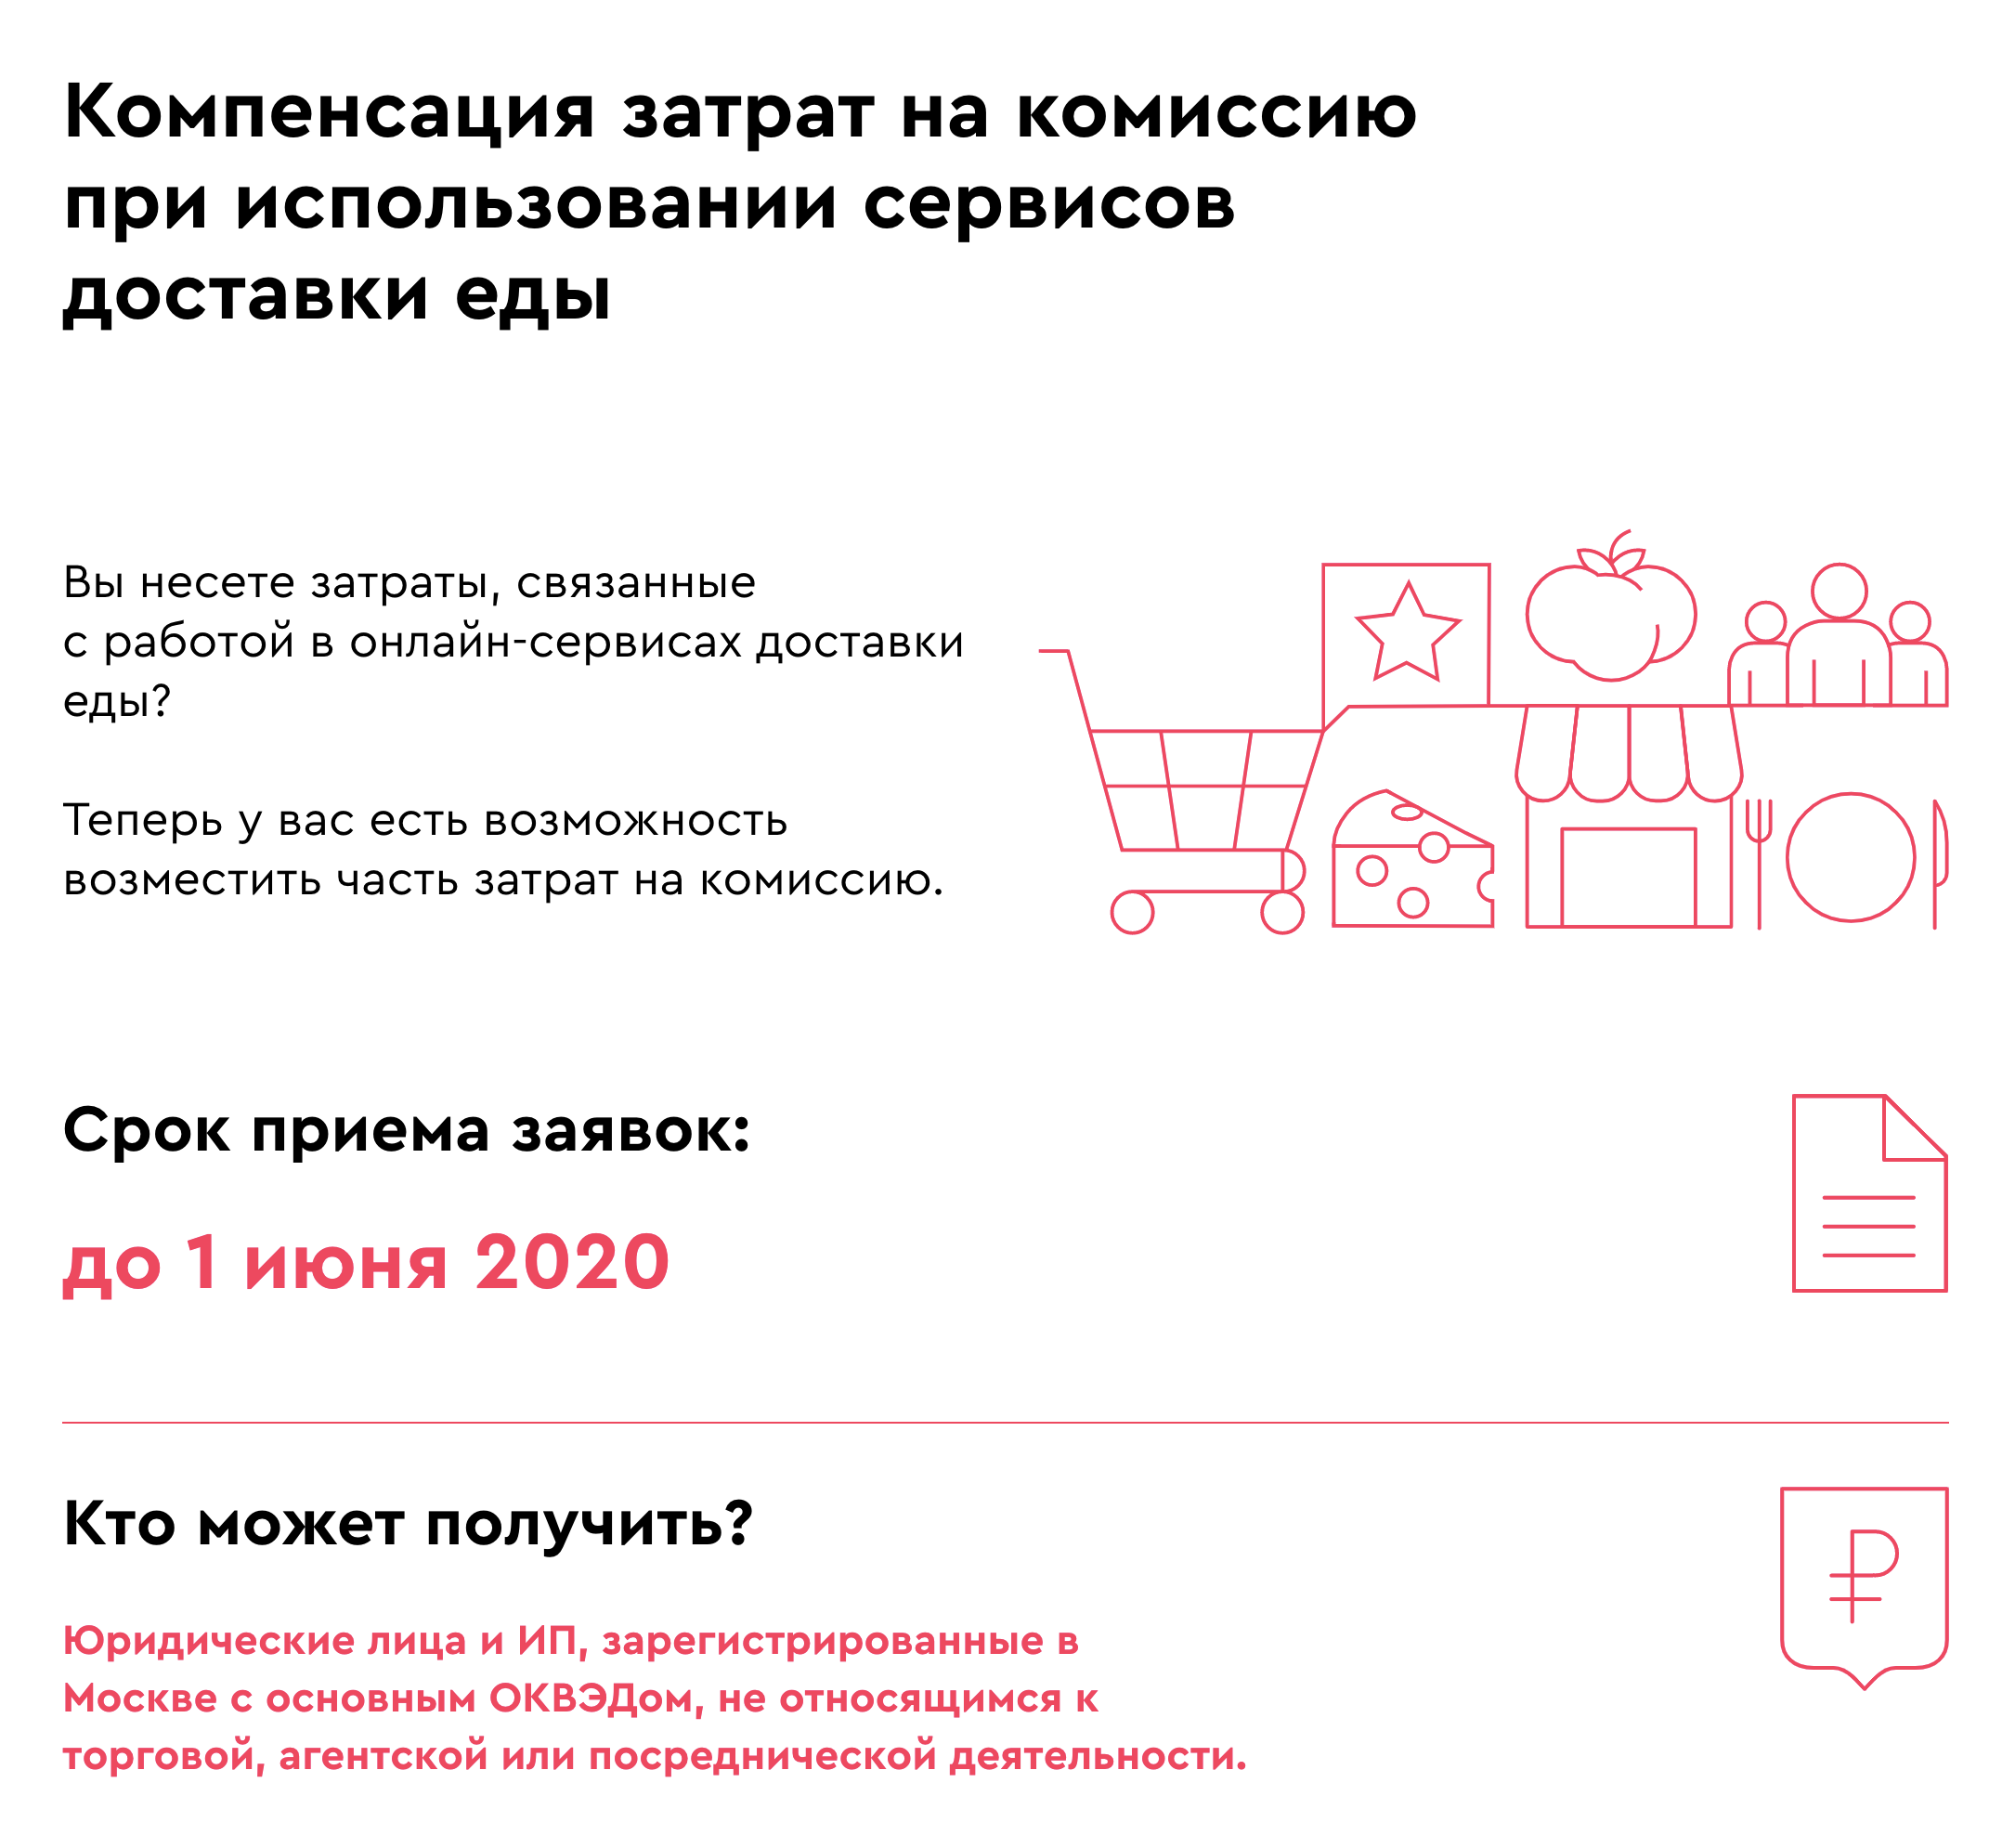 Сейчас правительство Москвы компенсирует затраты на комиссию только сервисов доставки «Яндекс-еда» и «Деливери-клаб». Список сервисов доставки обещают дополнить